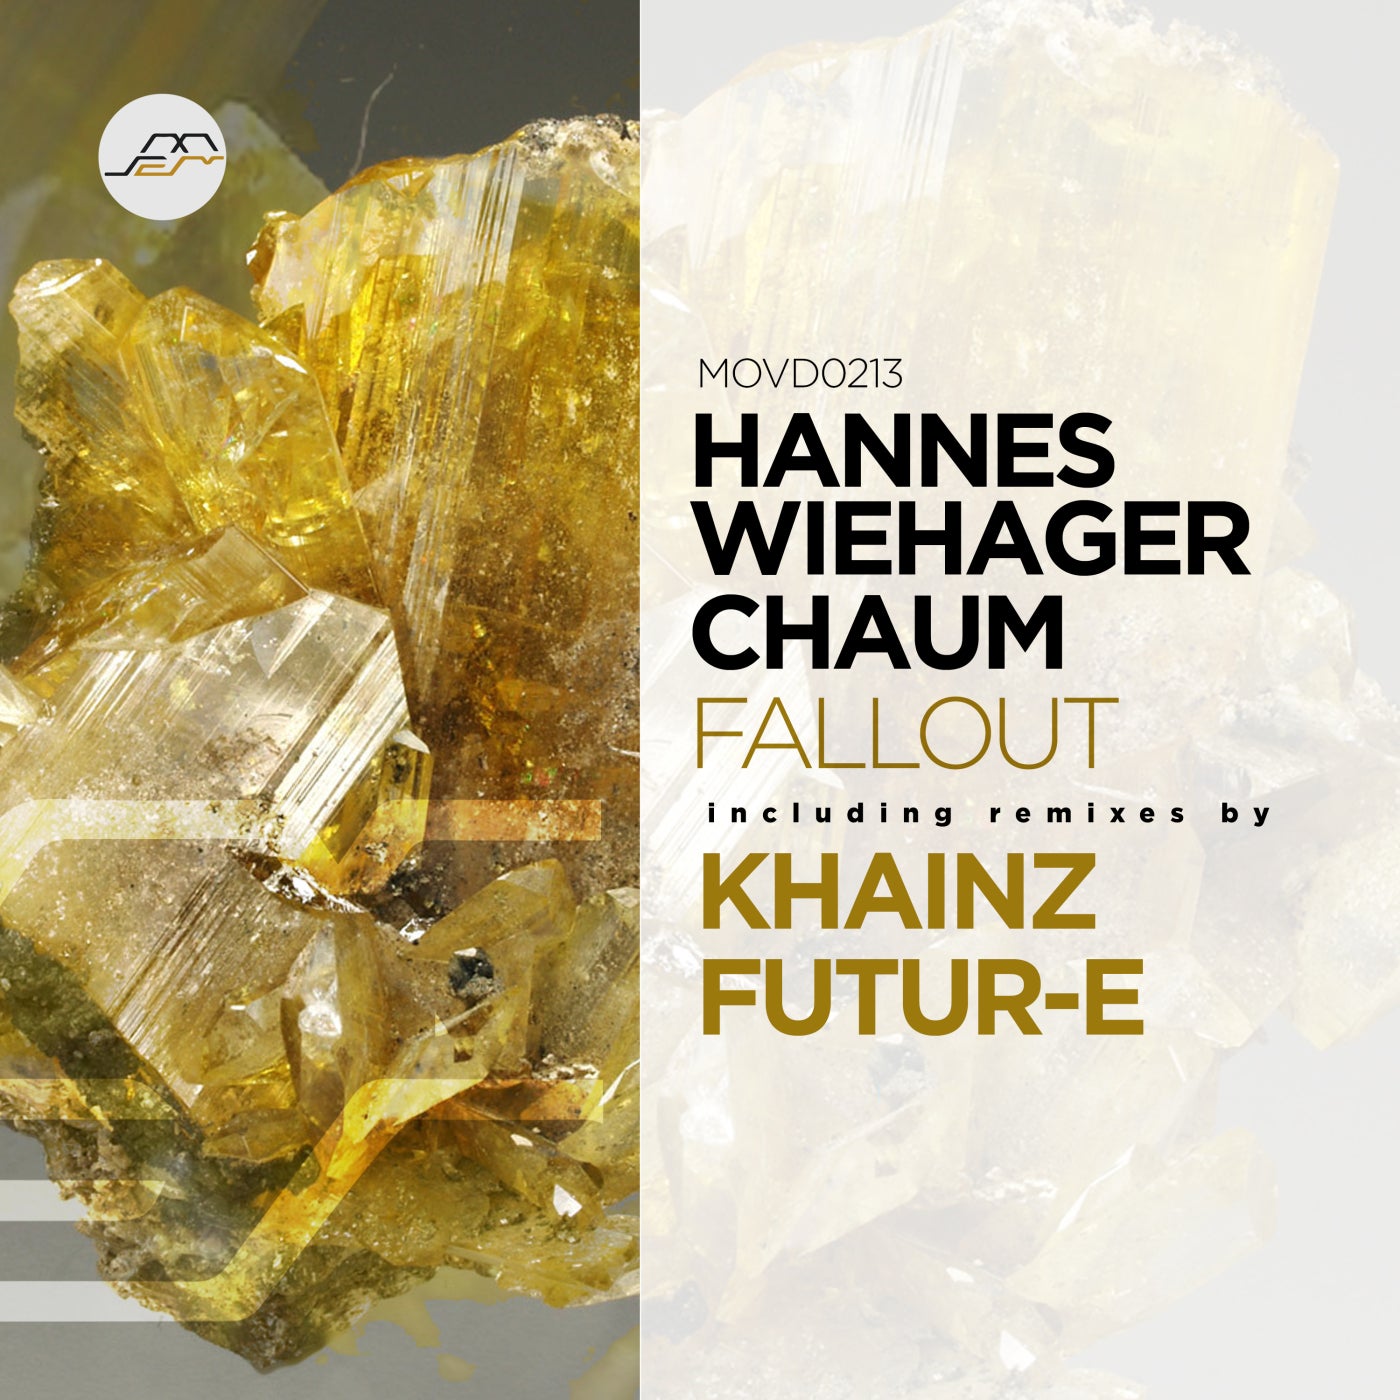 Chaum, Hannes Wiehager - Fallout (Khainz Remix)